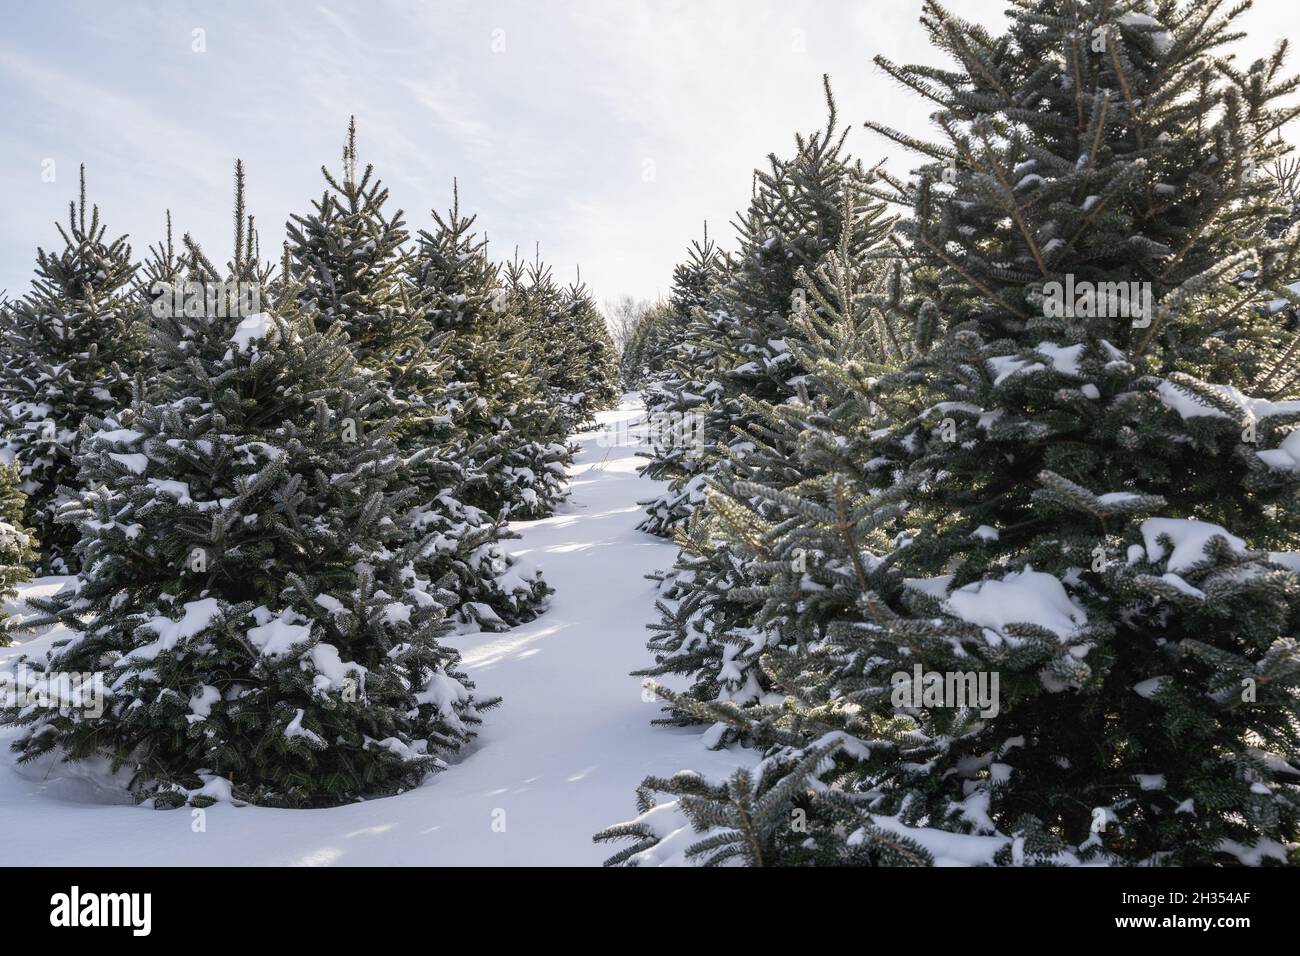 Árboles cubiertos de nieve en la granja de árboles de Navidad. Foto de stock